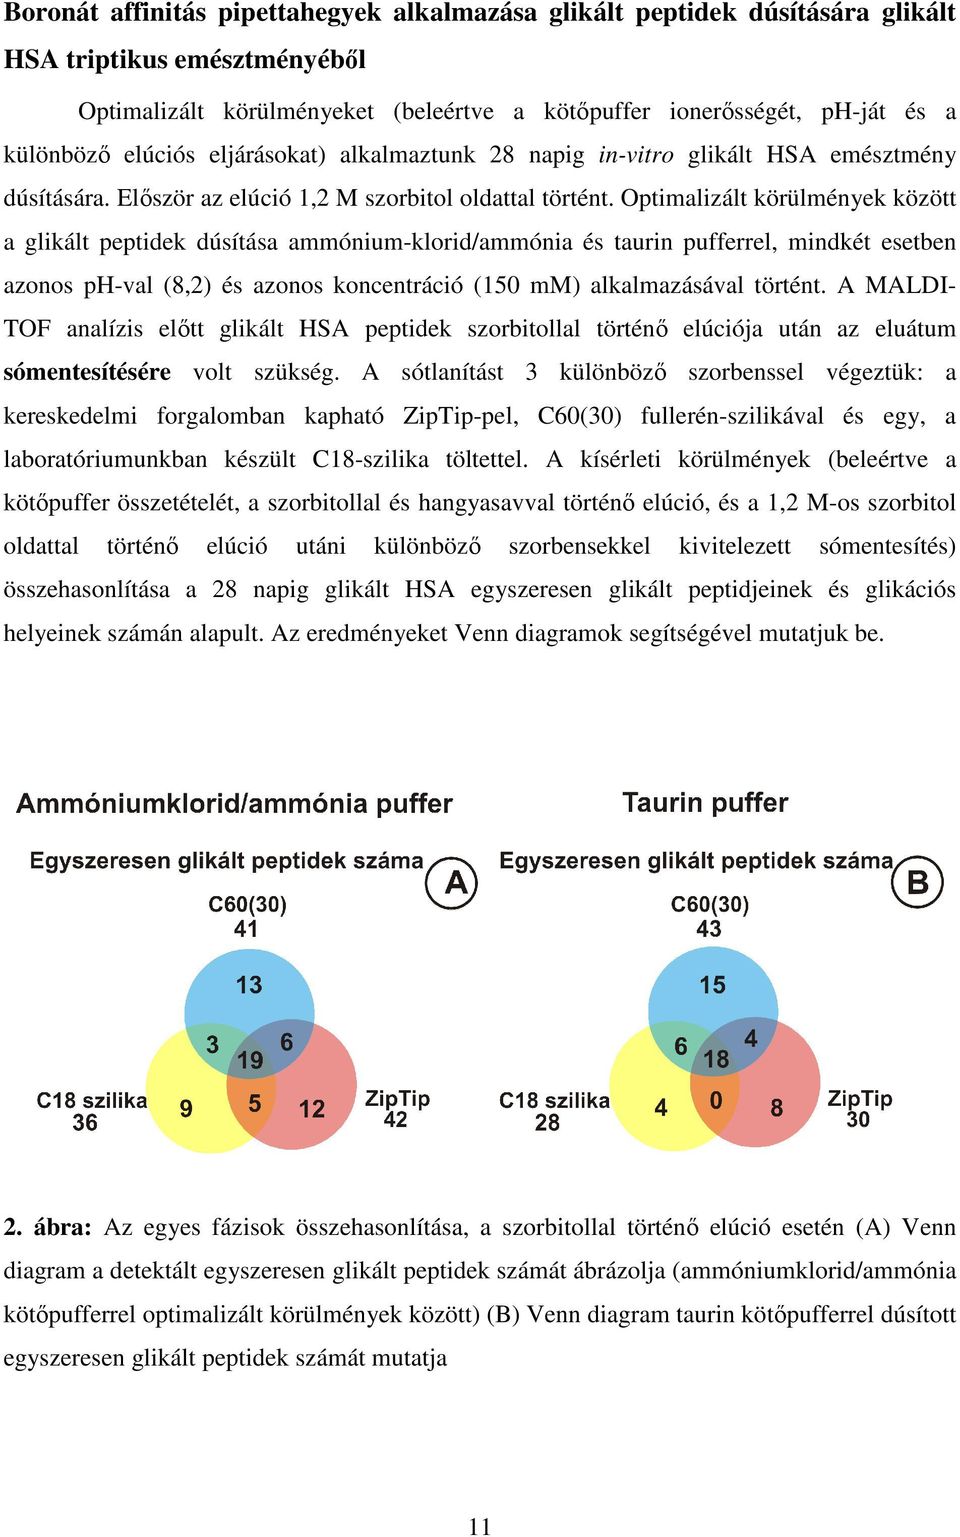 Optimalizált körülmények között a glikált peptidek dúsítása ammónium-klorid/ammónia és taurin pufferrel, mindkét esetben azonos ph-val (8,2) és azonos koncentráció (150 mm) alkalmazásával történt.